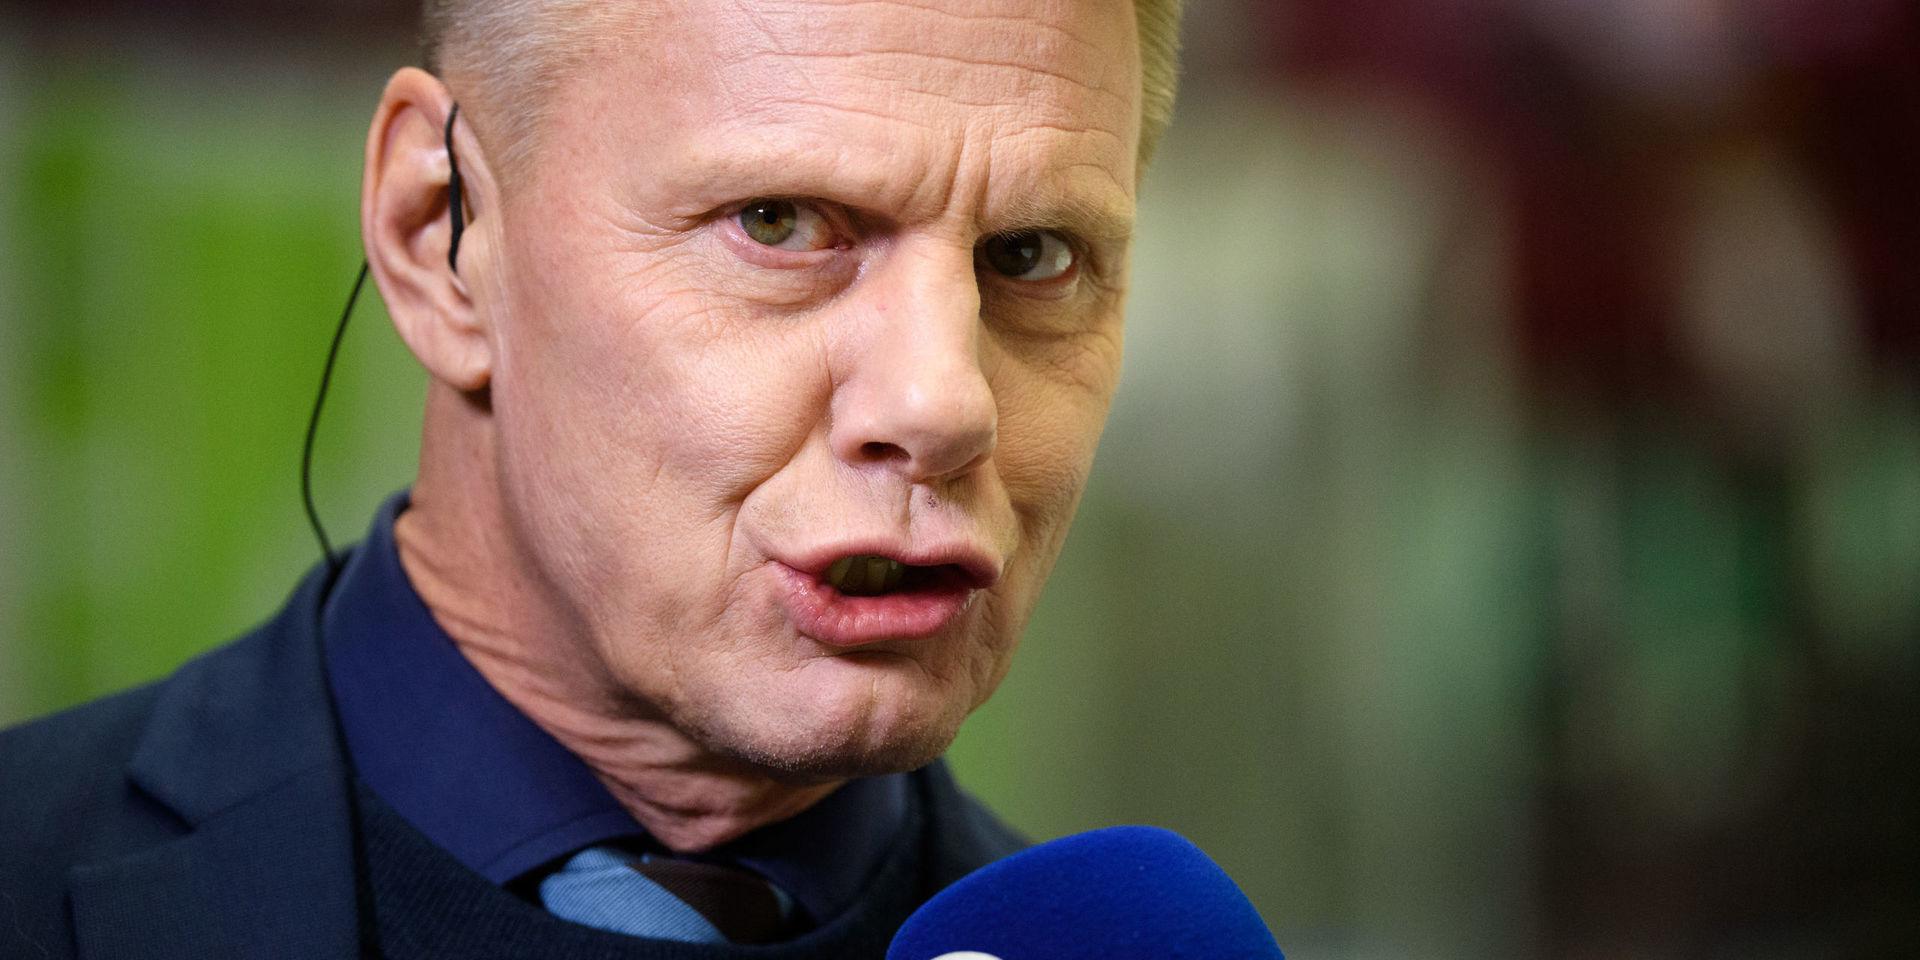 Expertkommentatorn och före detta tränaren Niklas Wikegård anser att Leksands nye tränare Björn Hellkvist borde ha respekterat sin förra klubb Modo.